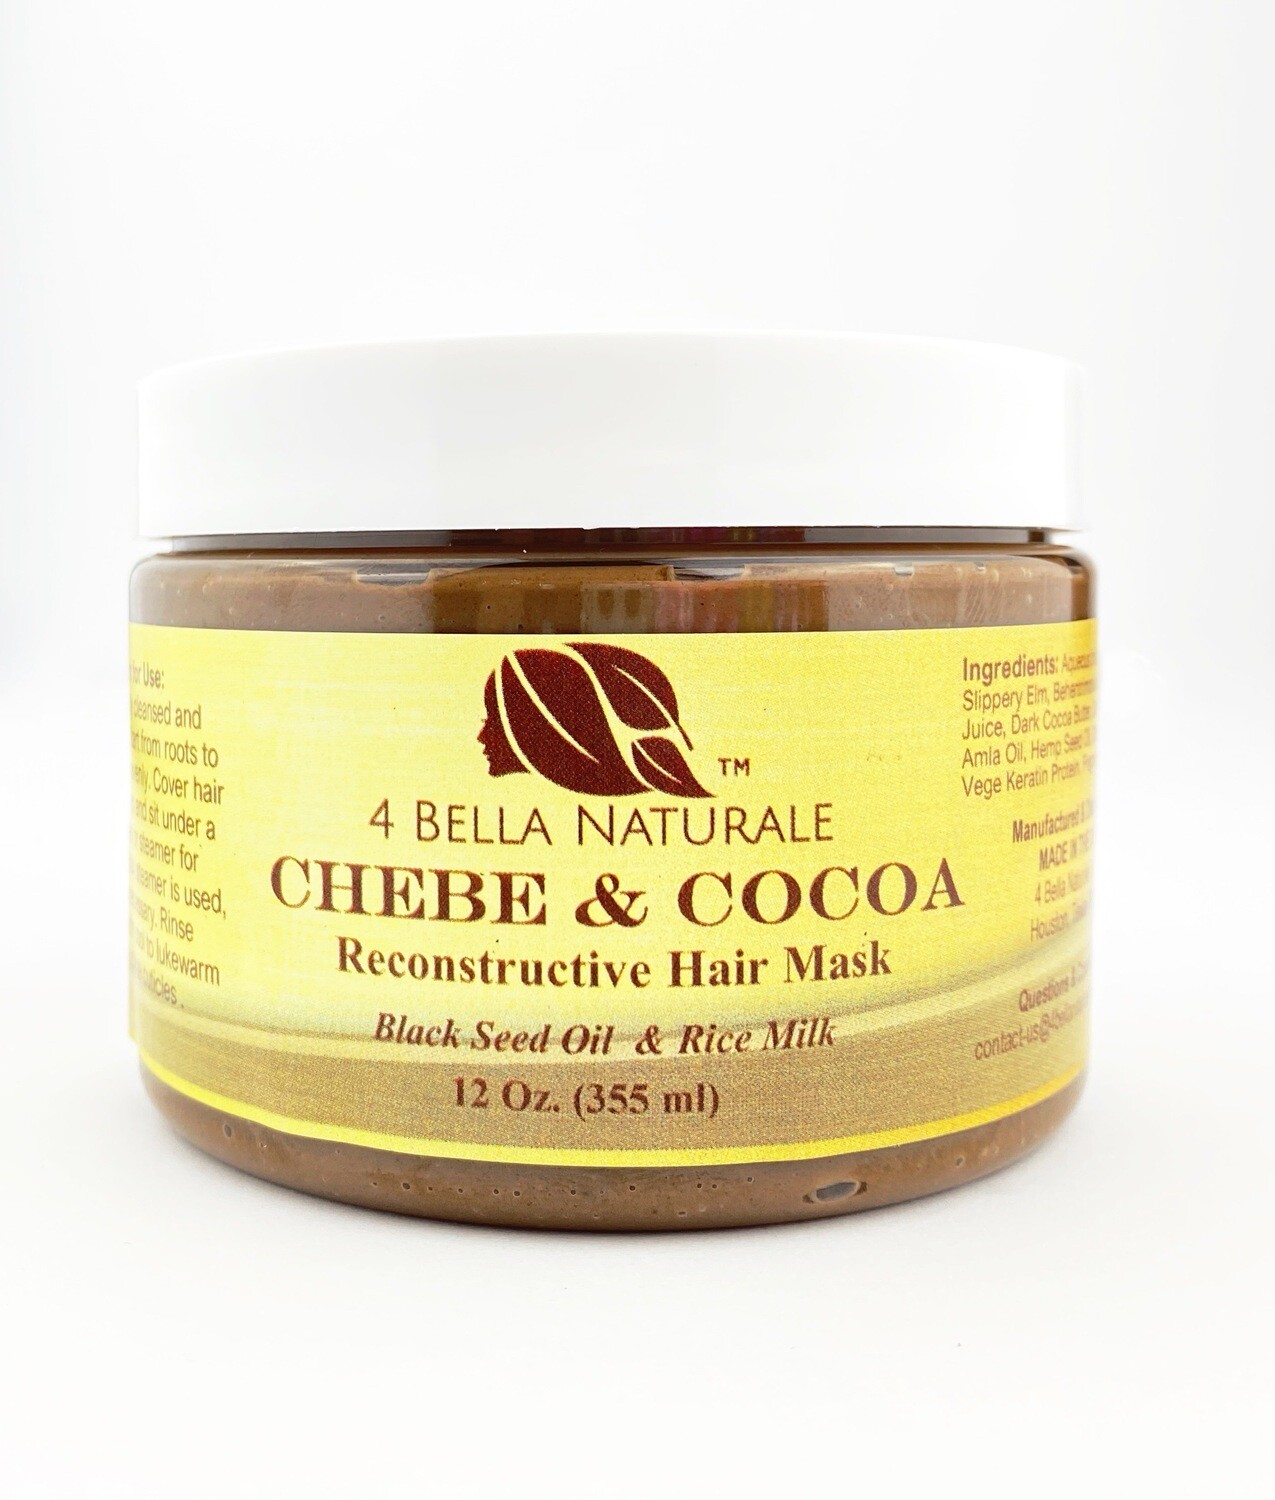 CHEBE & COCOA Reconstructive Hair Mask